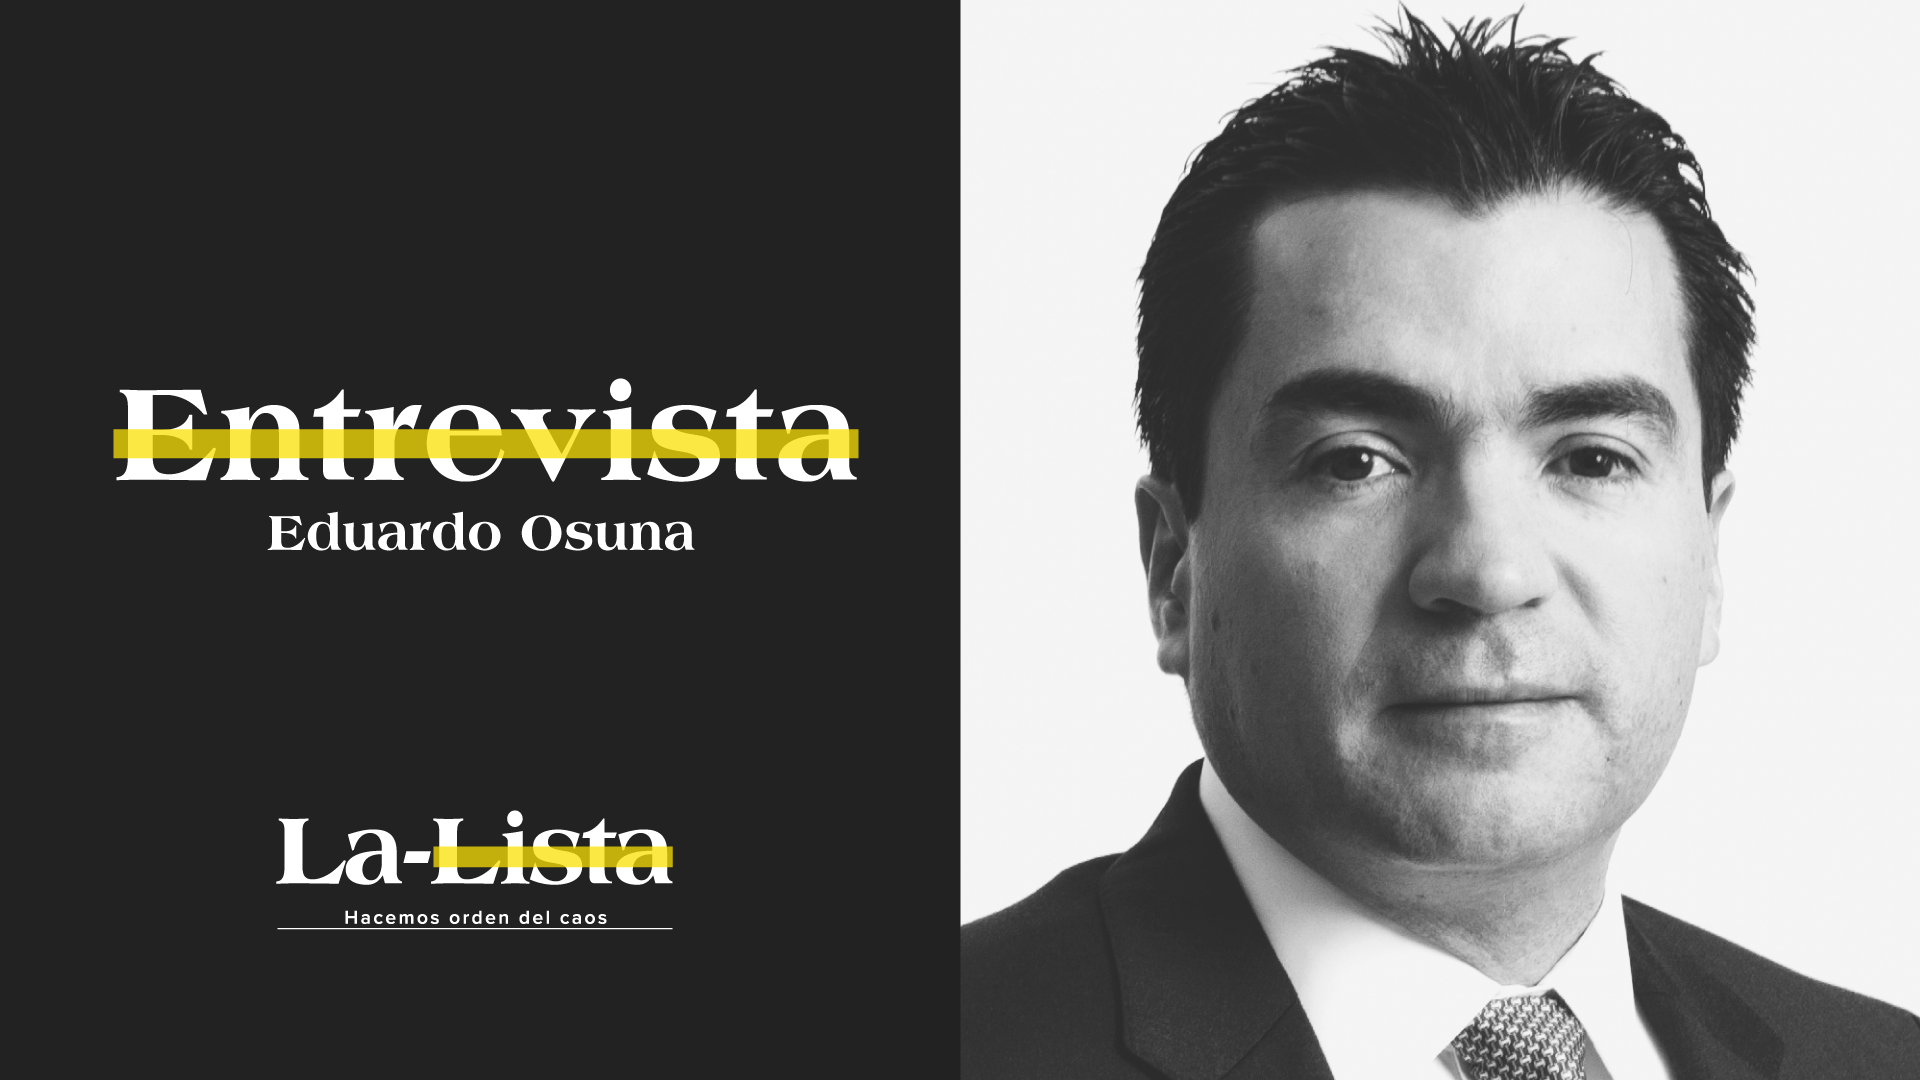 El sistema financiero aprendió lo que no se debe hacer: Eduardo Osuna, Director de BBVA